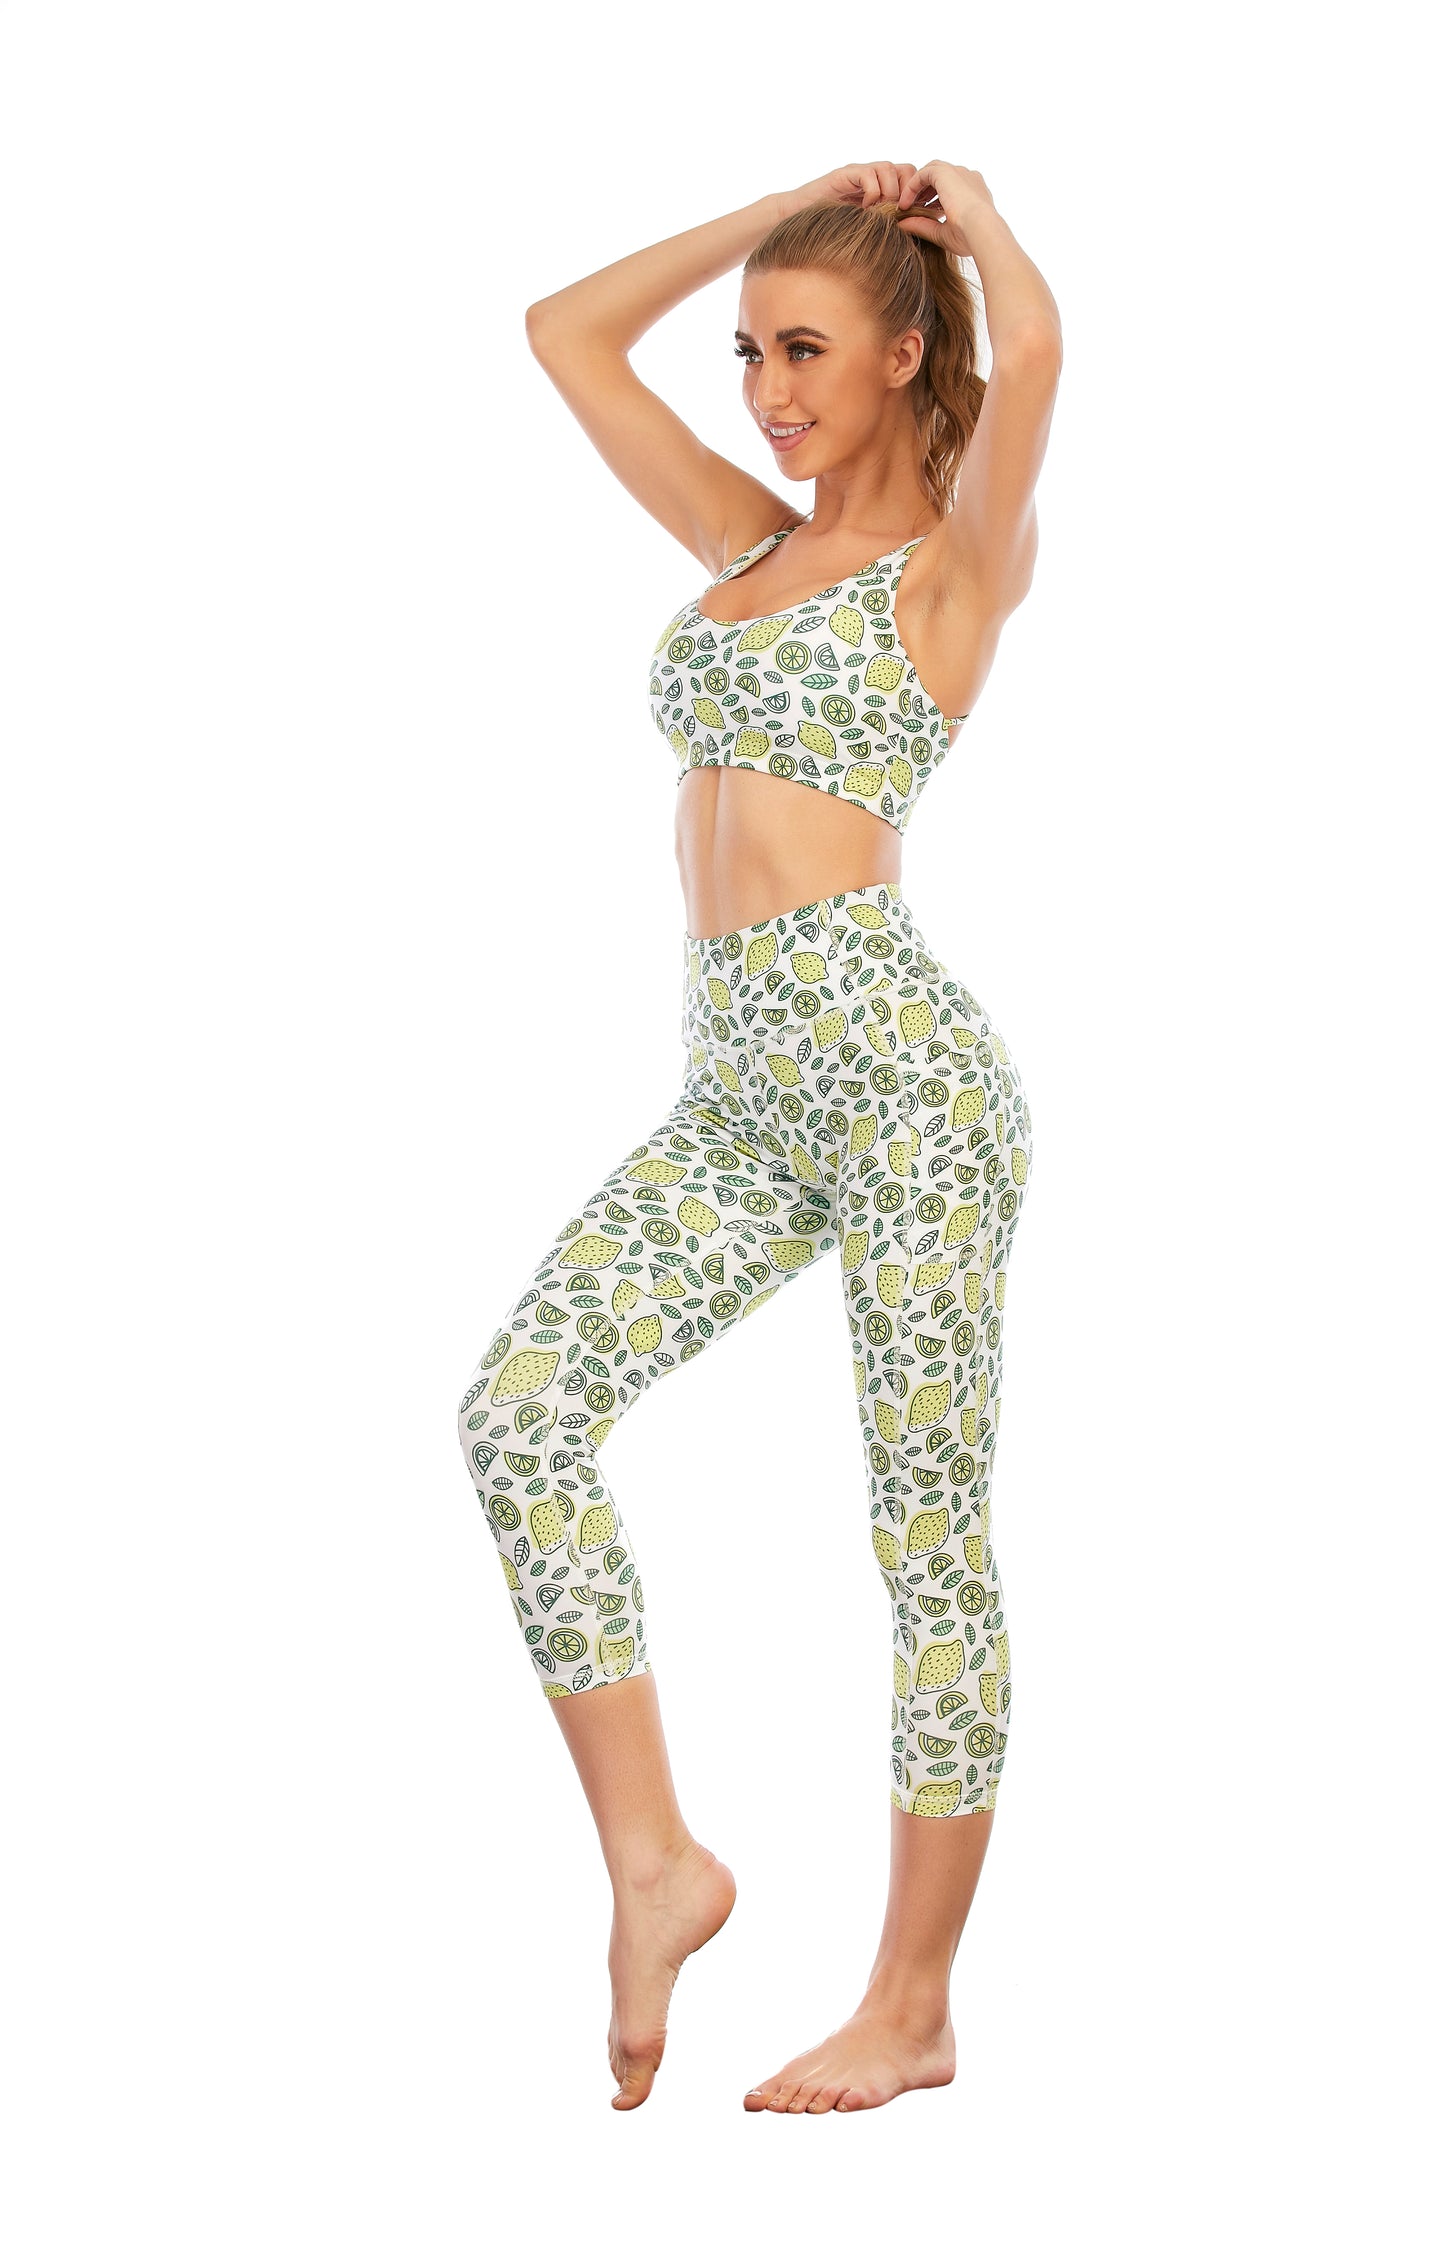 HZORI® | Sports Yoga Suit Women's Lemon Print